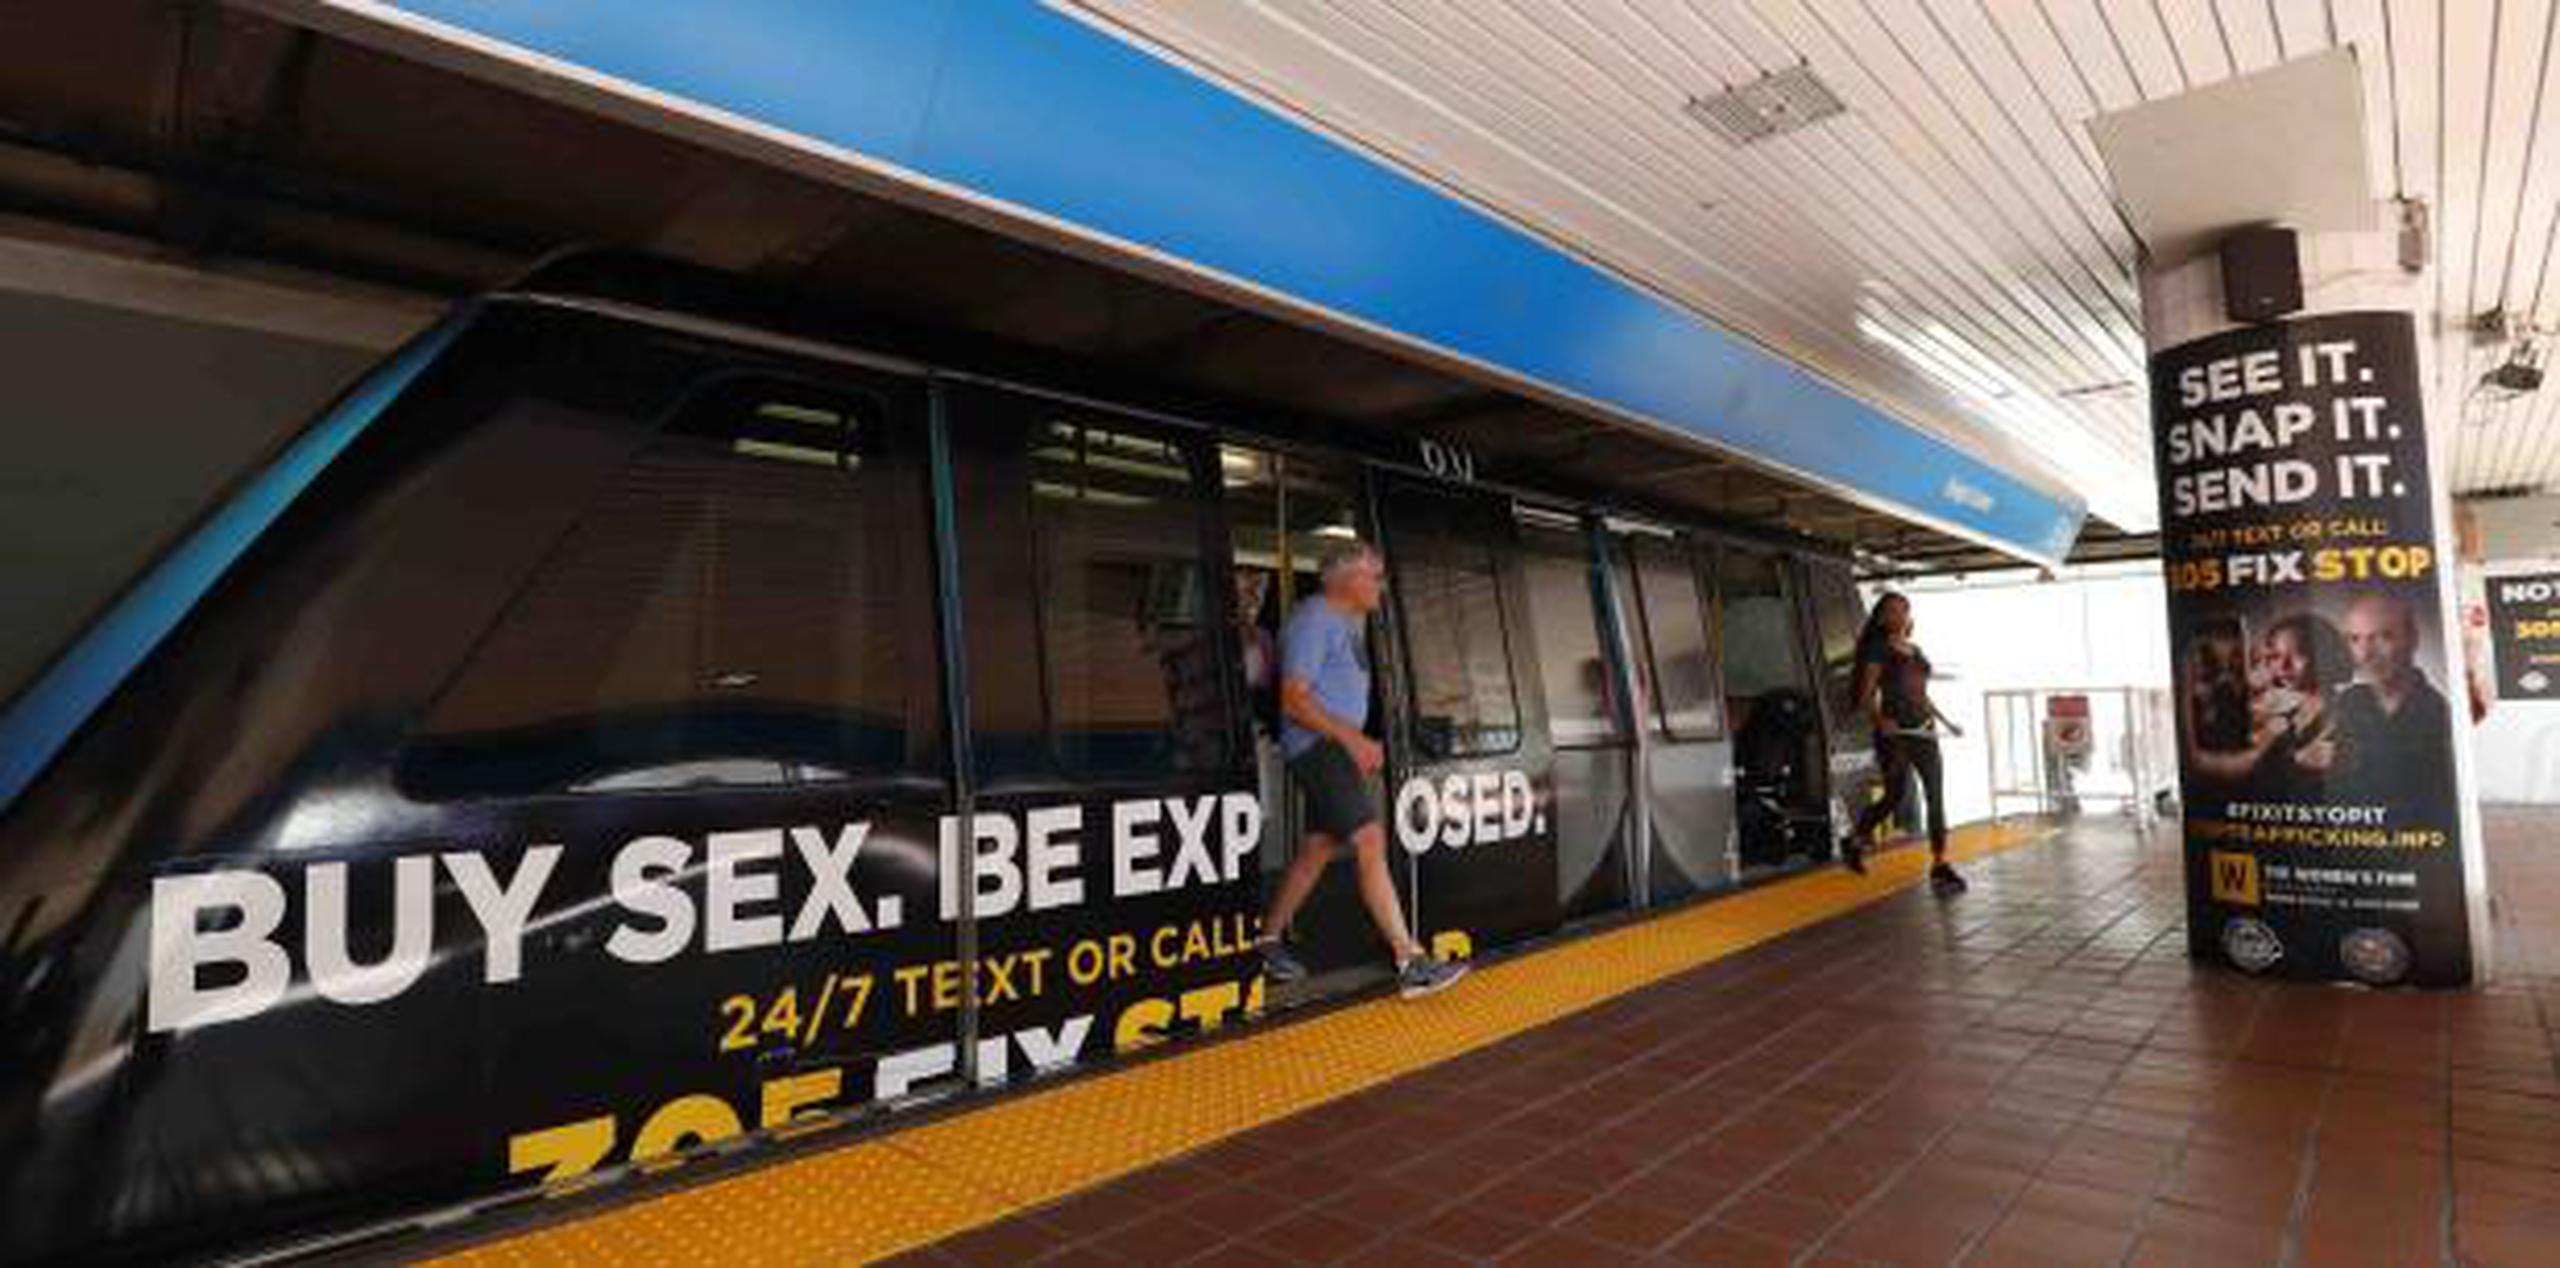 La iniciativa de Miami incluirá anuncios, entre ellos un afiche con las palabras: “Compra Sexo. Serás Expuesto”. (AP)